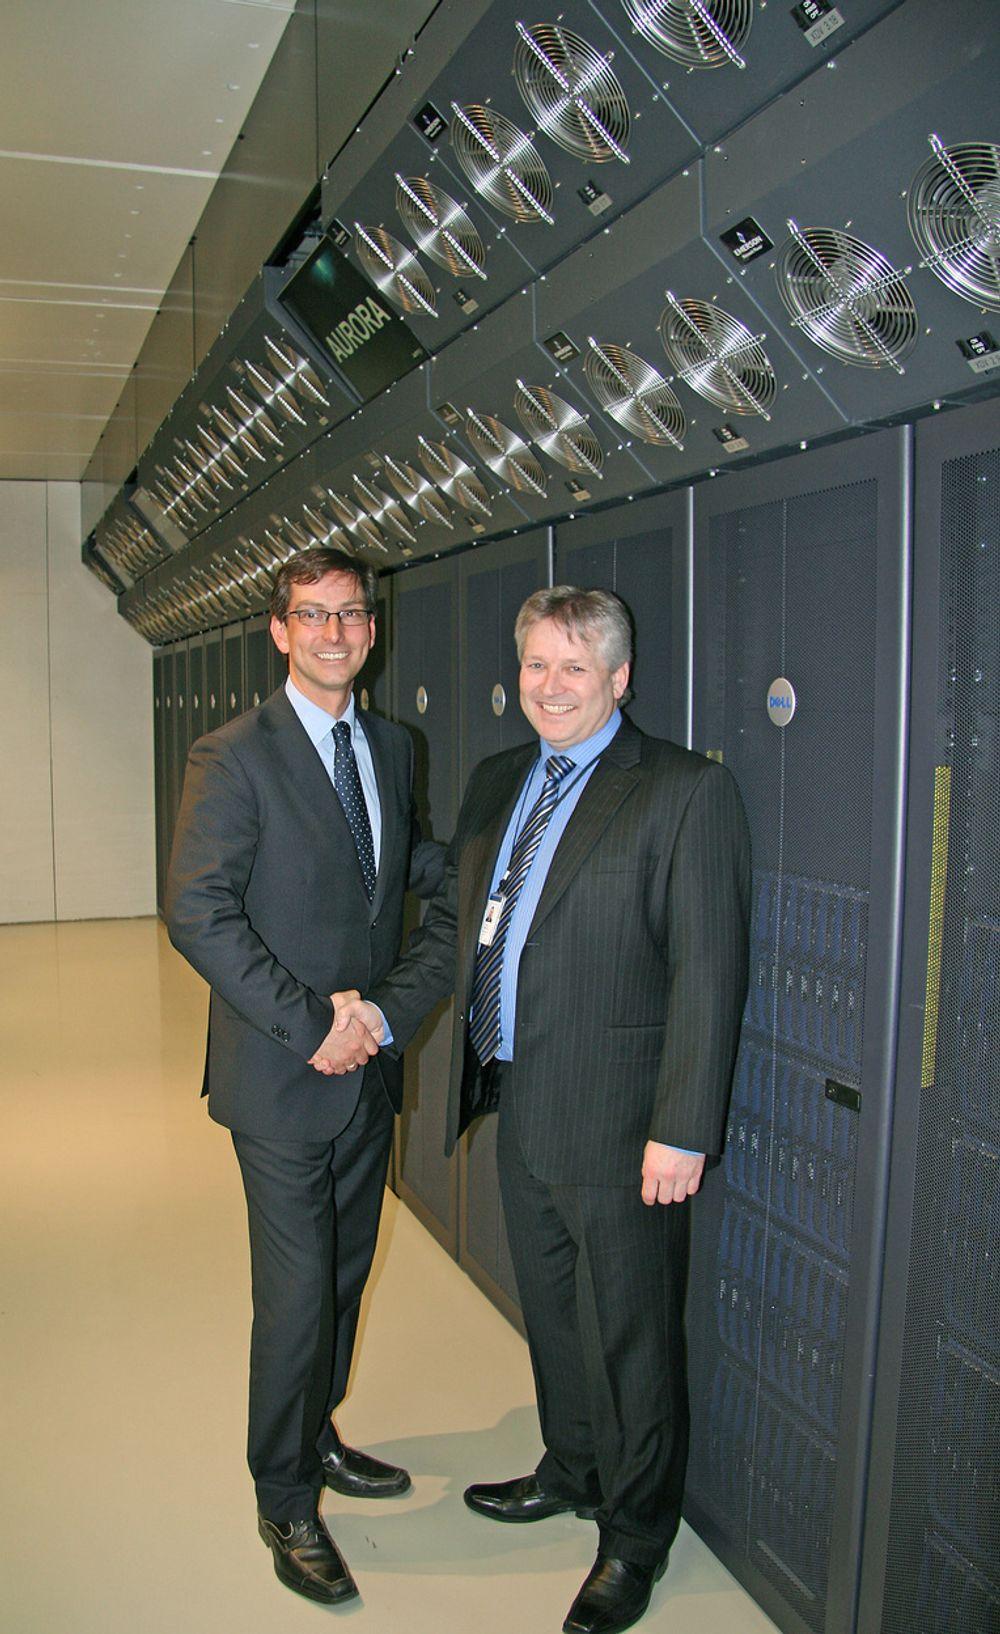 TAKK FOR HANDELEN:
Adm. direktør i Dell Norge, Michael Jacobs Dell Til venstre har grunn til å takke adm. direktør i EMGS for ordren på den nye superdatamaskinen de står foran.